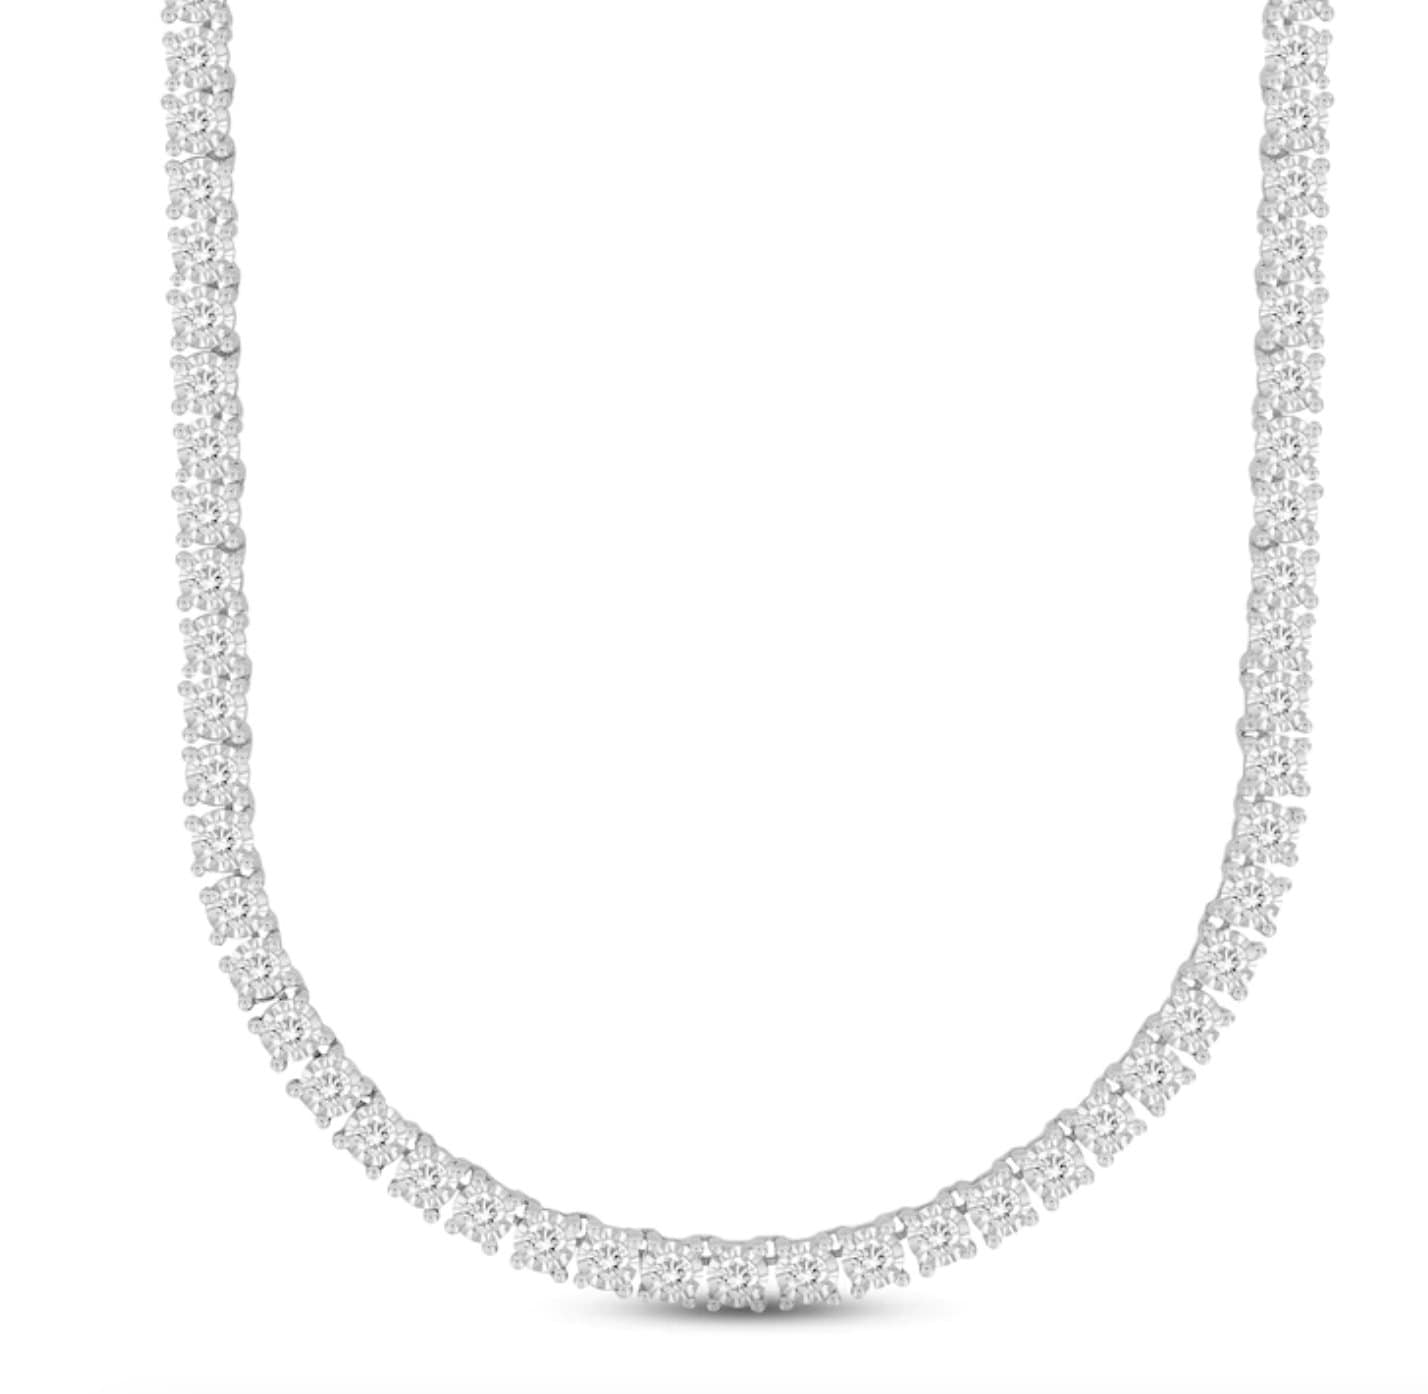 Gorgeous Vintage 14K White Gold Diamond Tennis Necklace - 8.20ct.